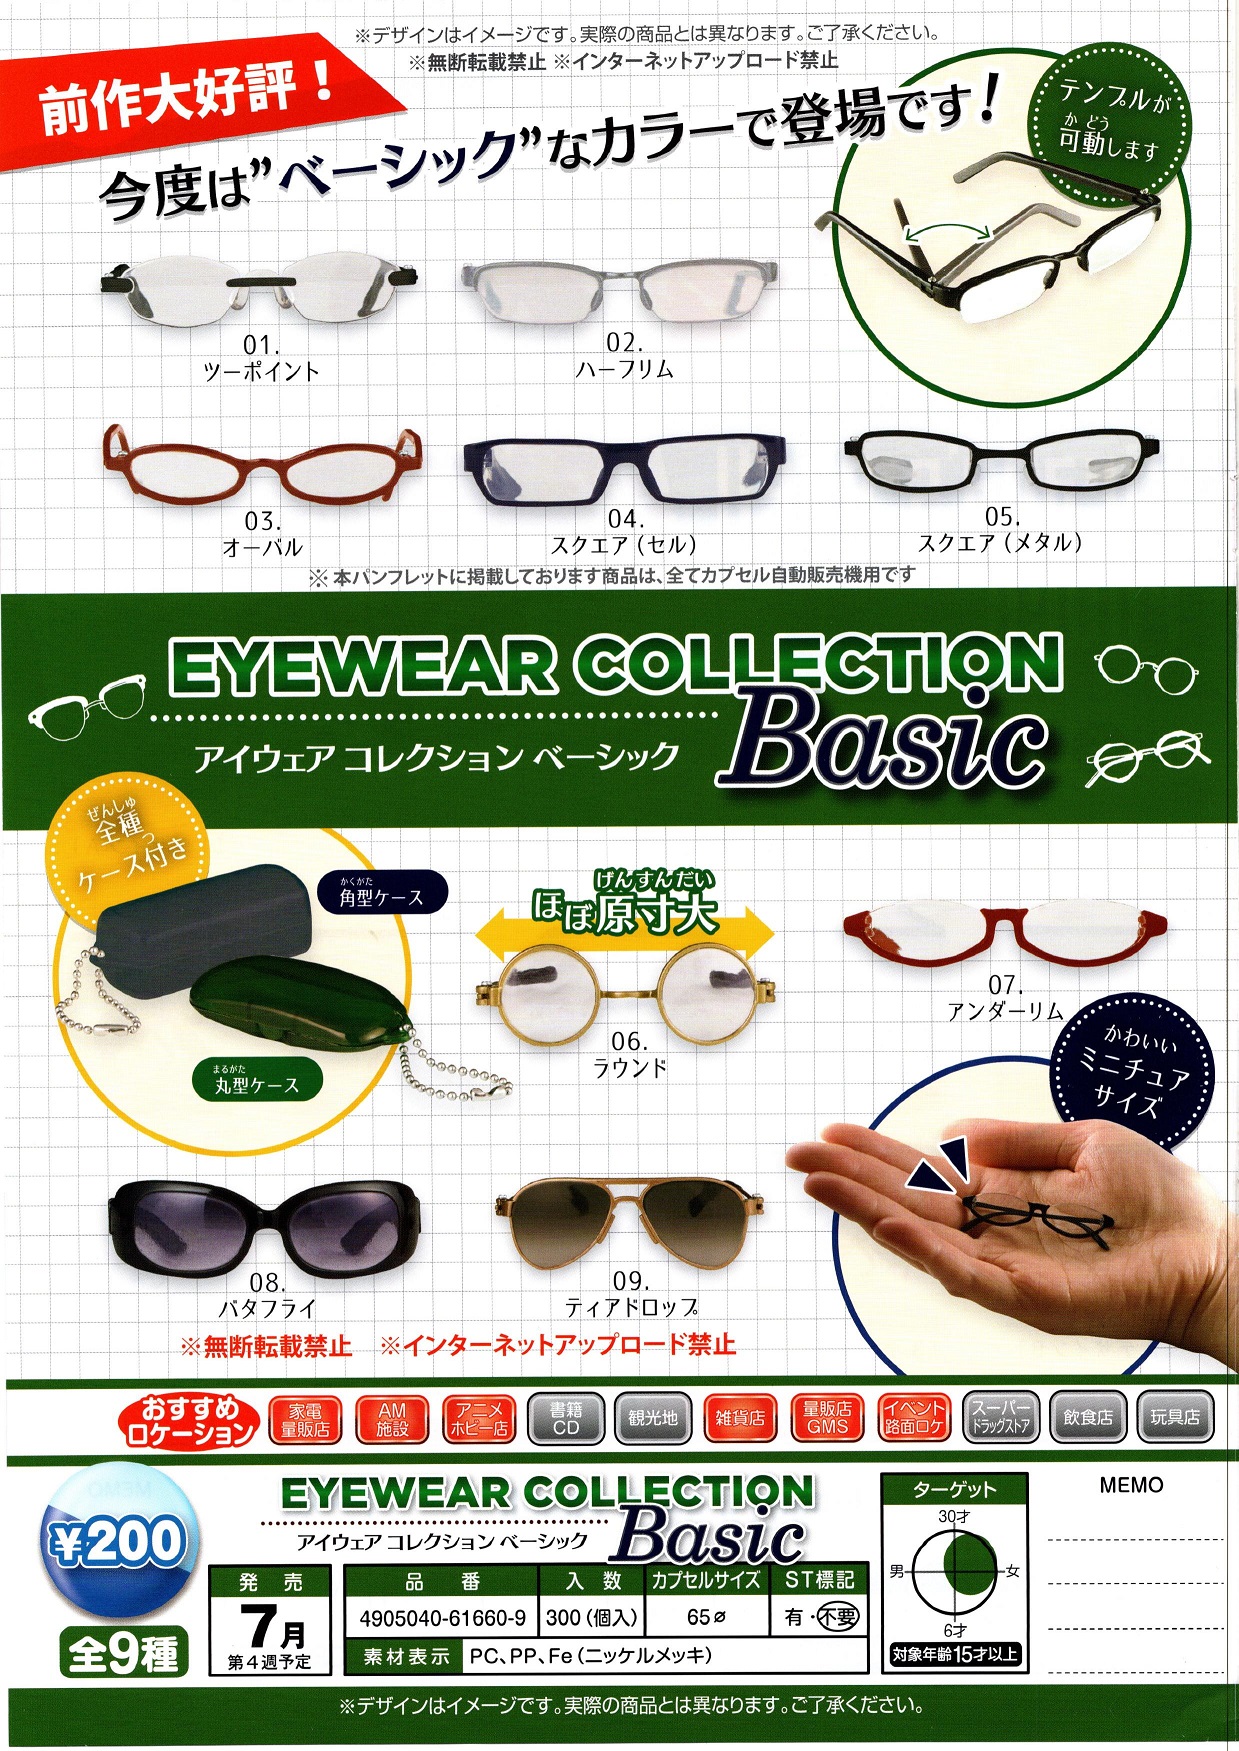 200日元扭蛋 挂件 装饰眼镜 Basic Ver. 全9种 616609